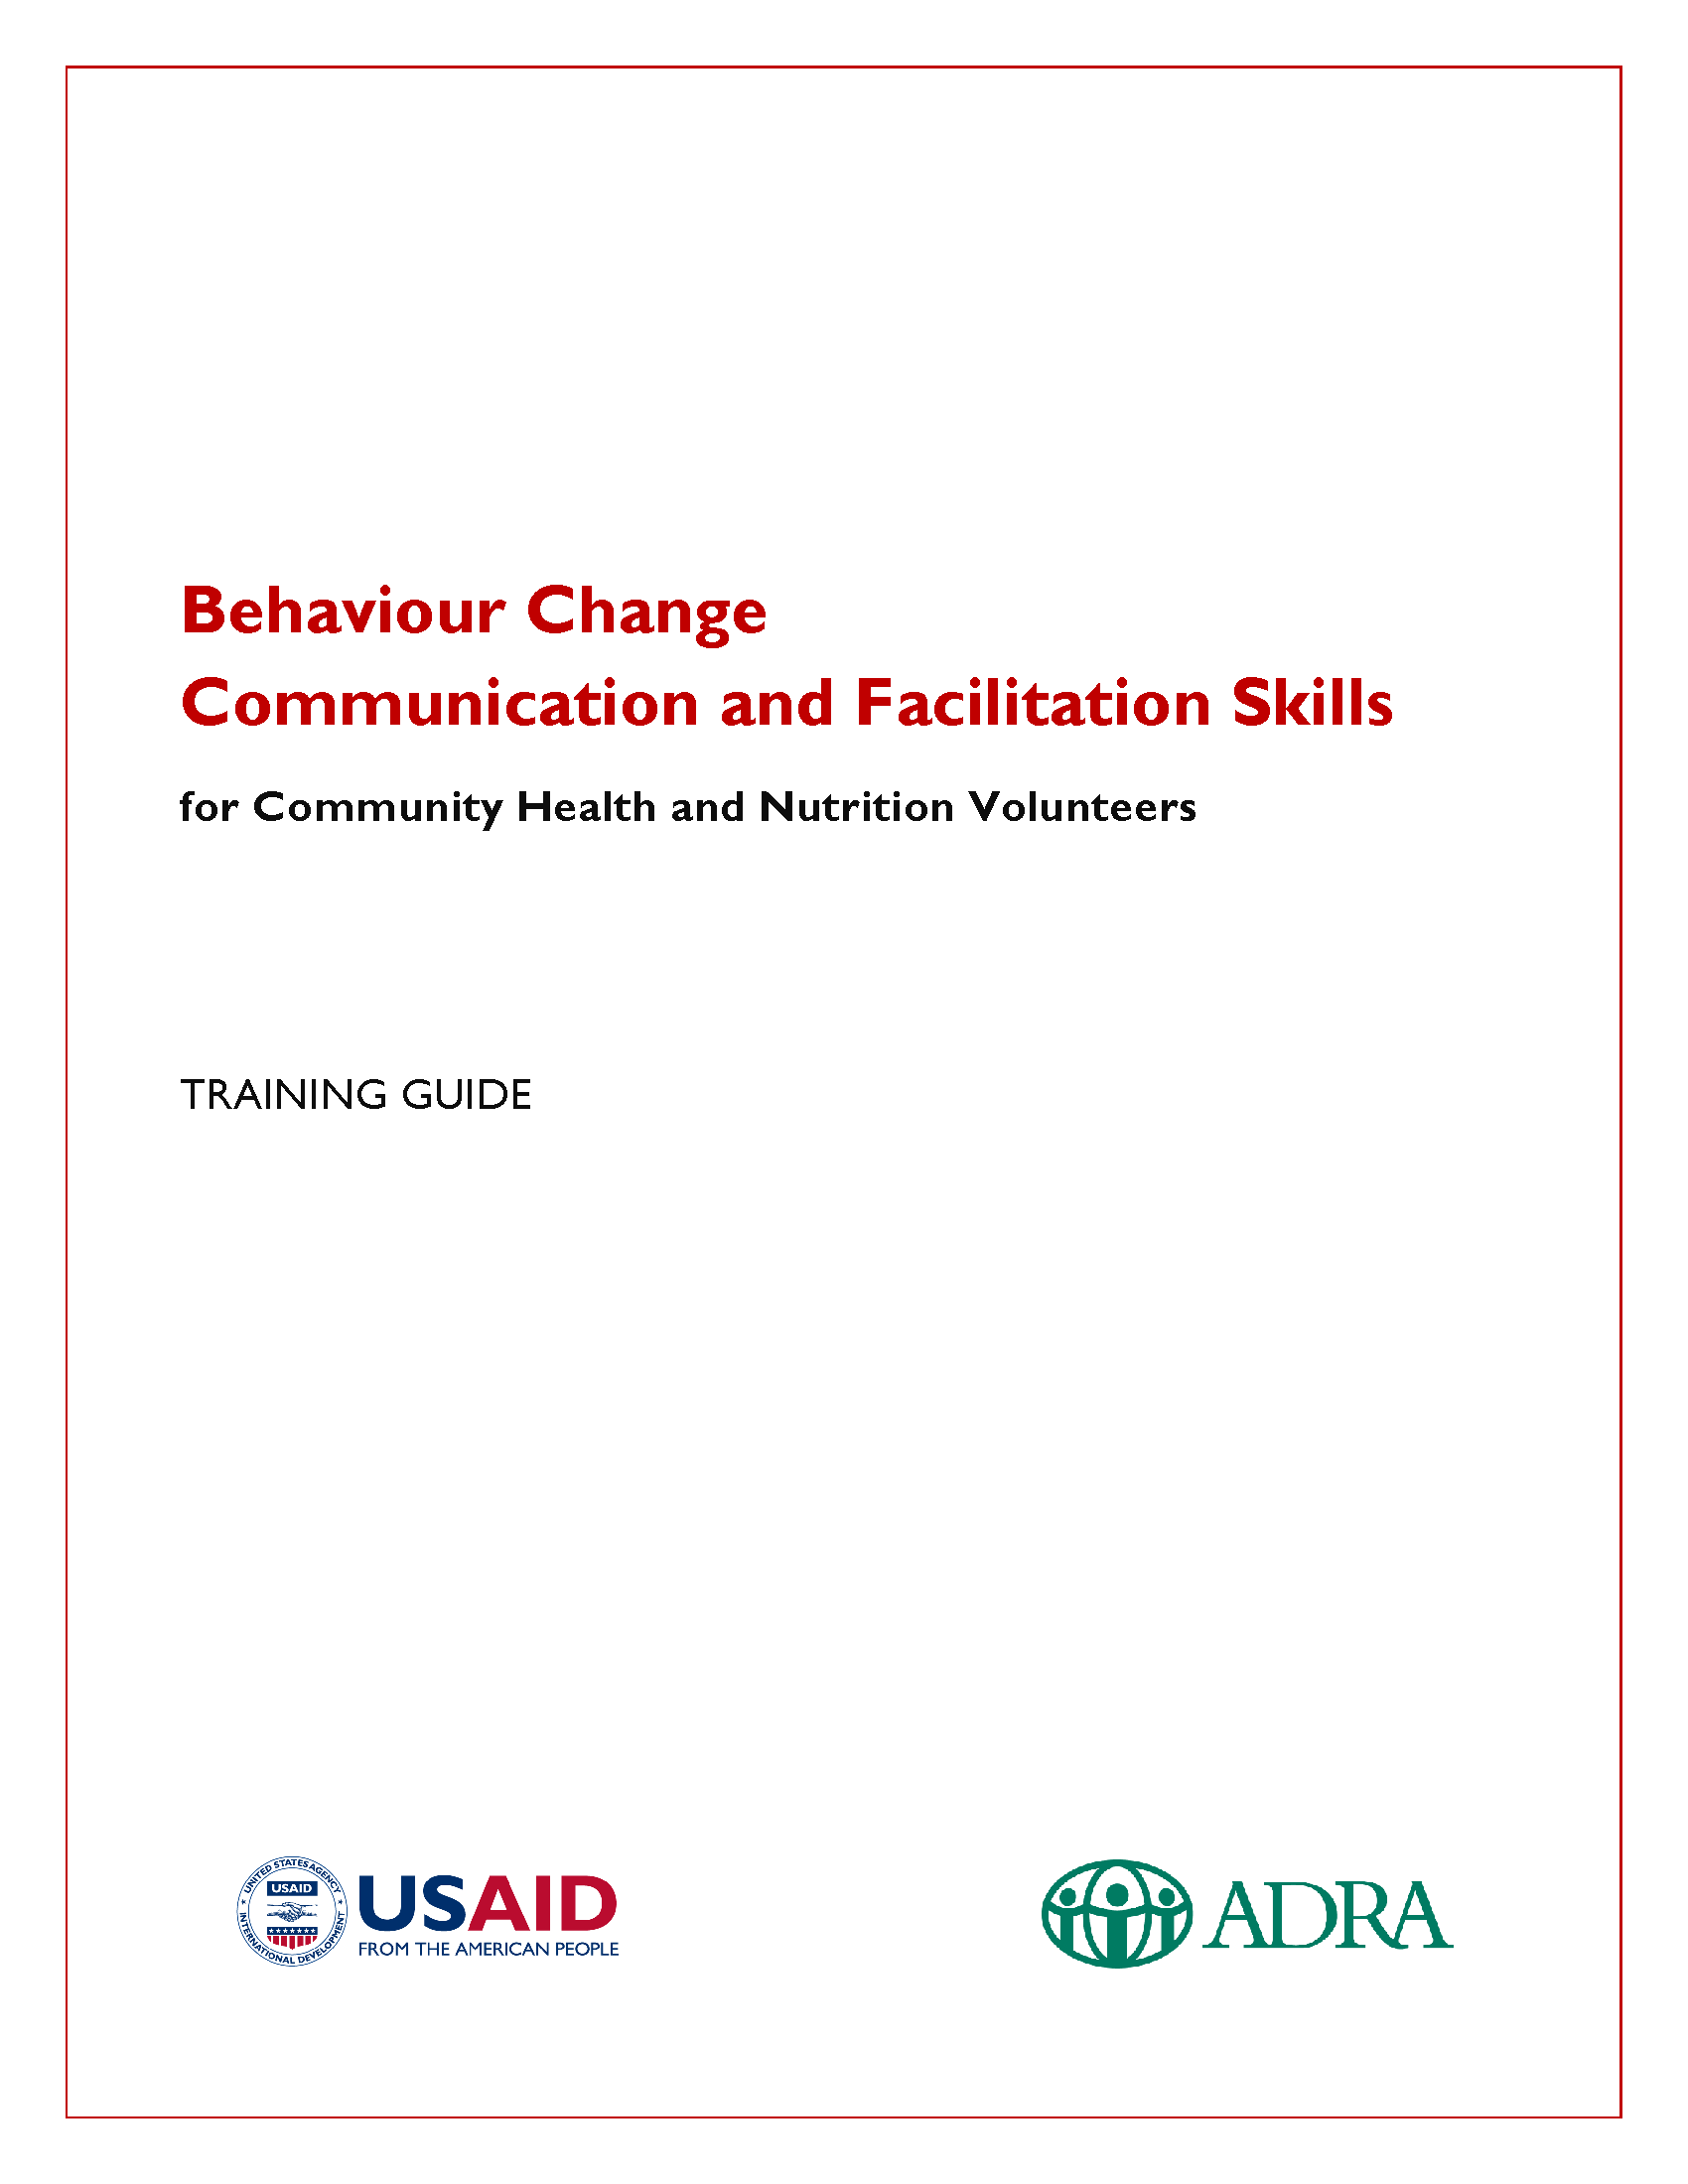 Page de couverture pour les compétences en matière de communication et de facilitation pour le changement de comportement pour les volontaires en santé communautaire et en nutrition